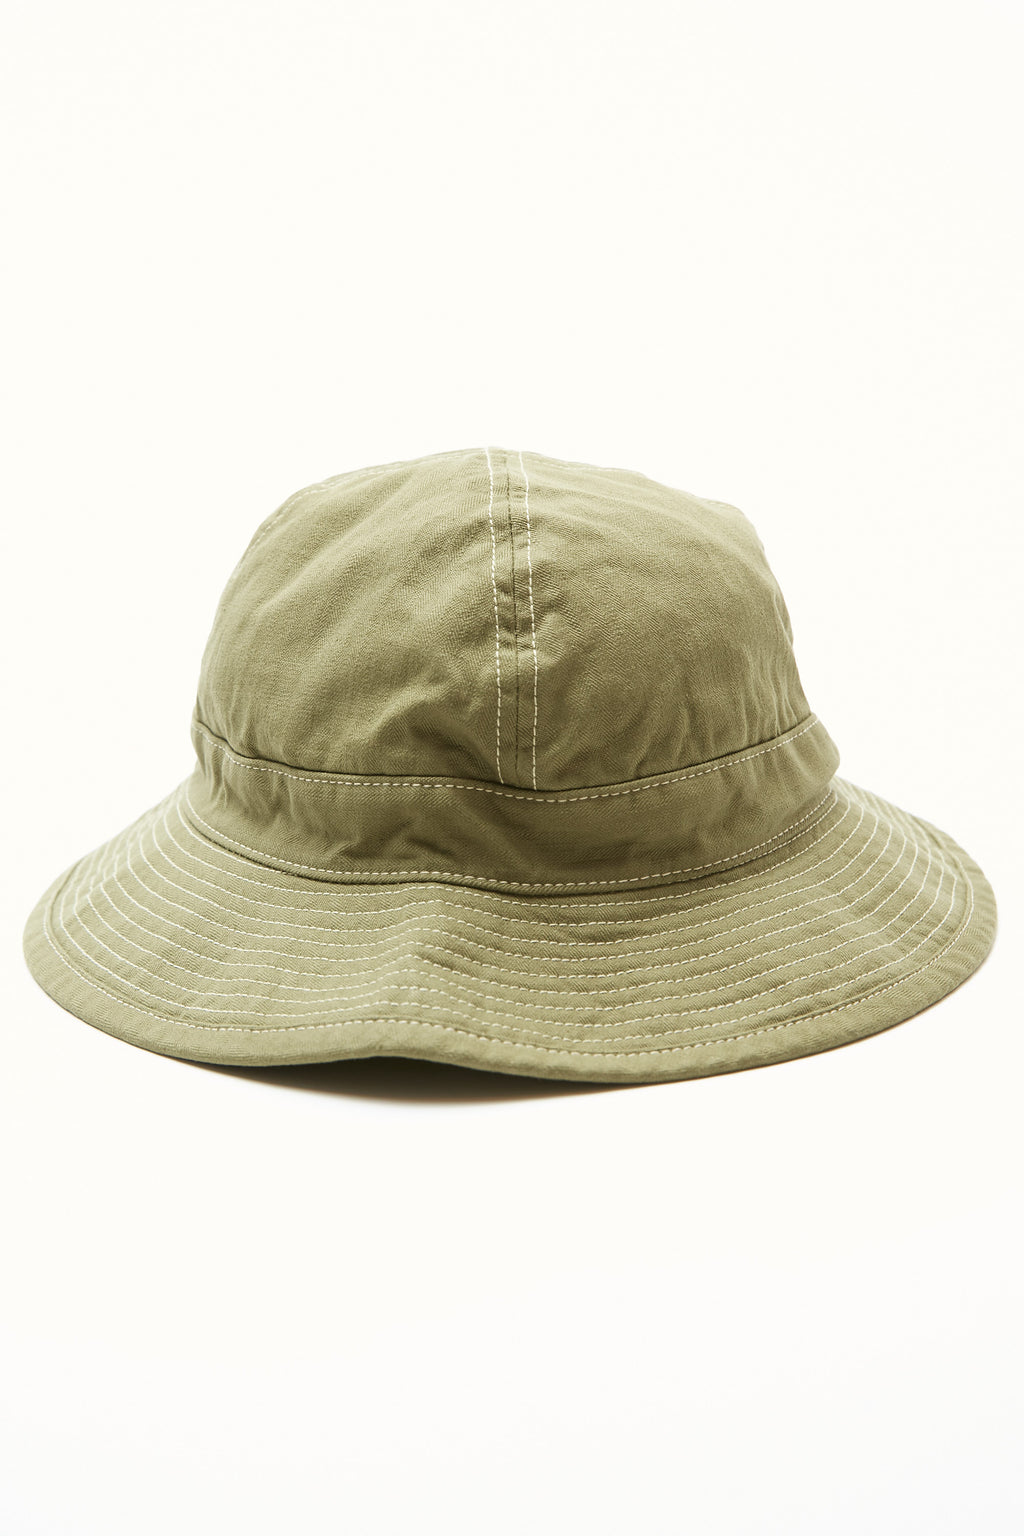 Orslow US Navy Hat Herringbone - Green